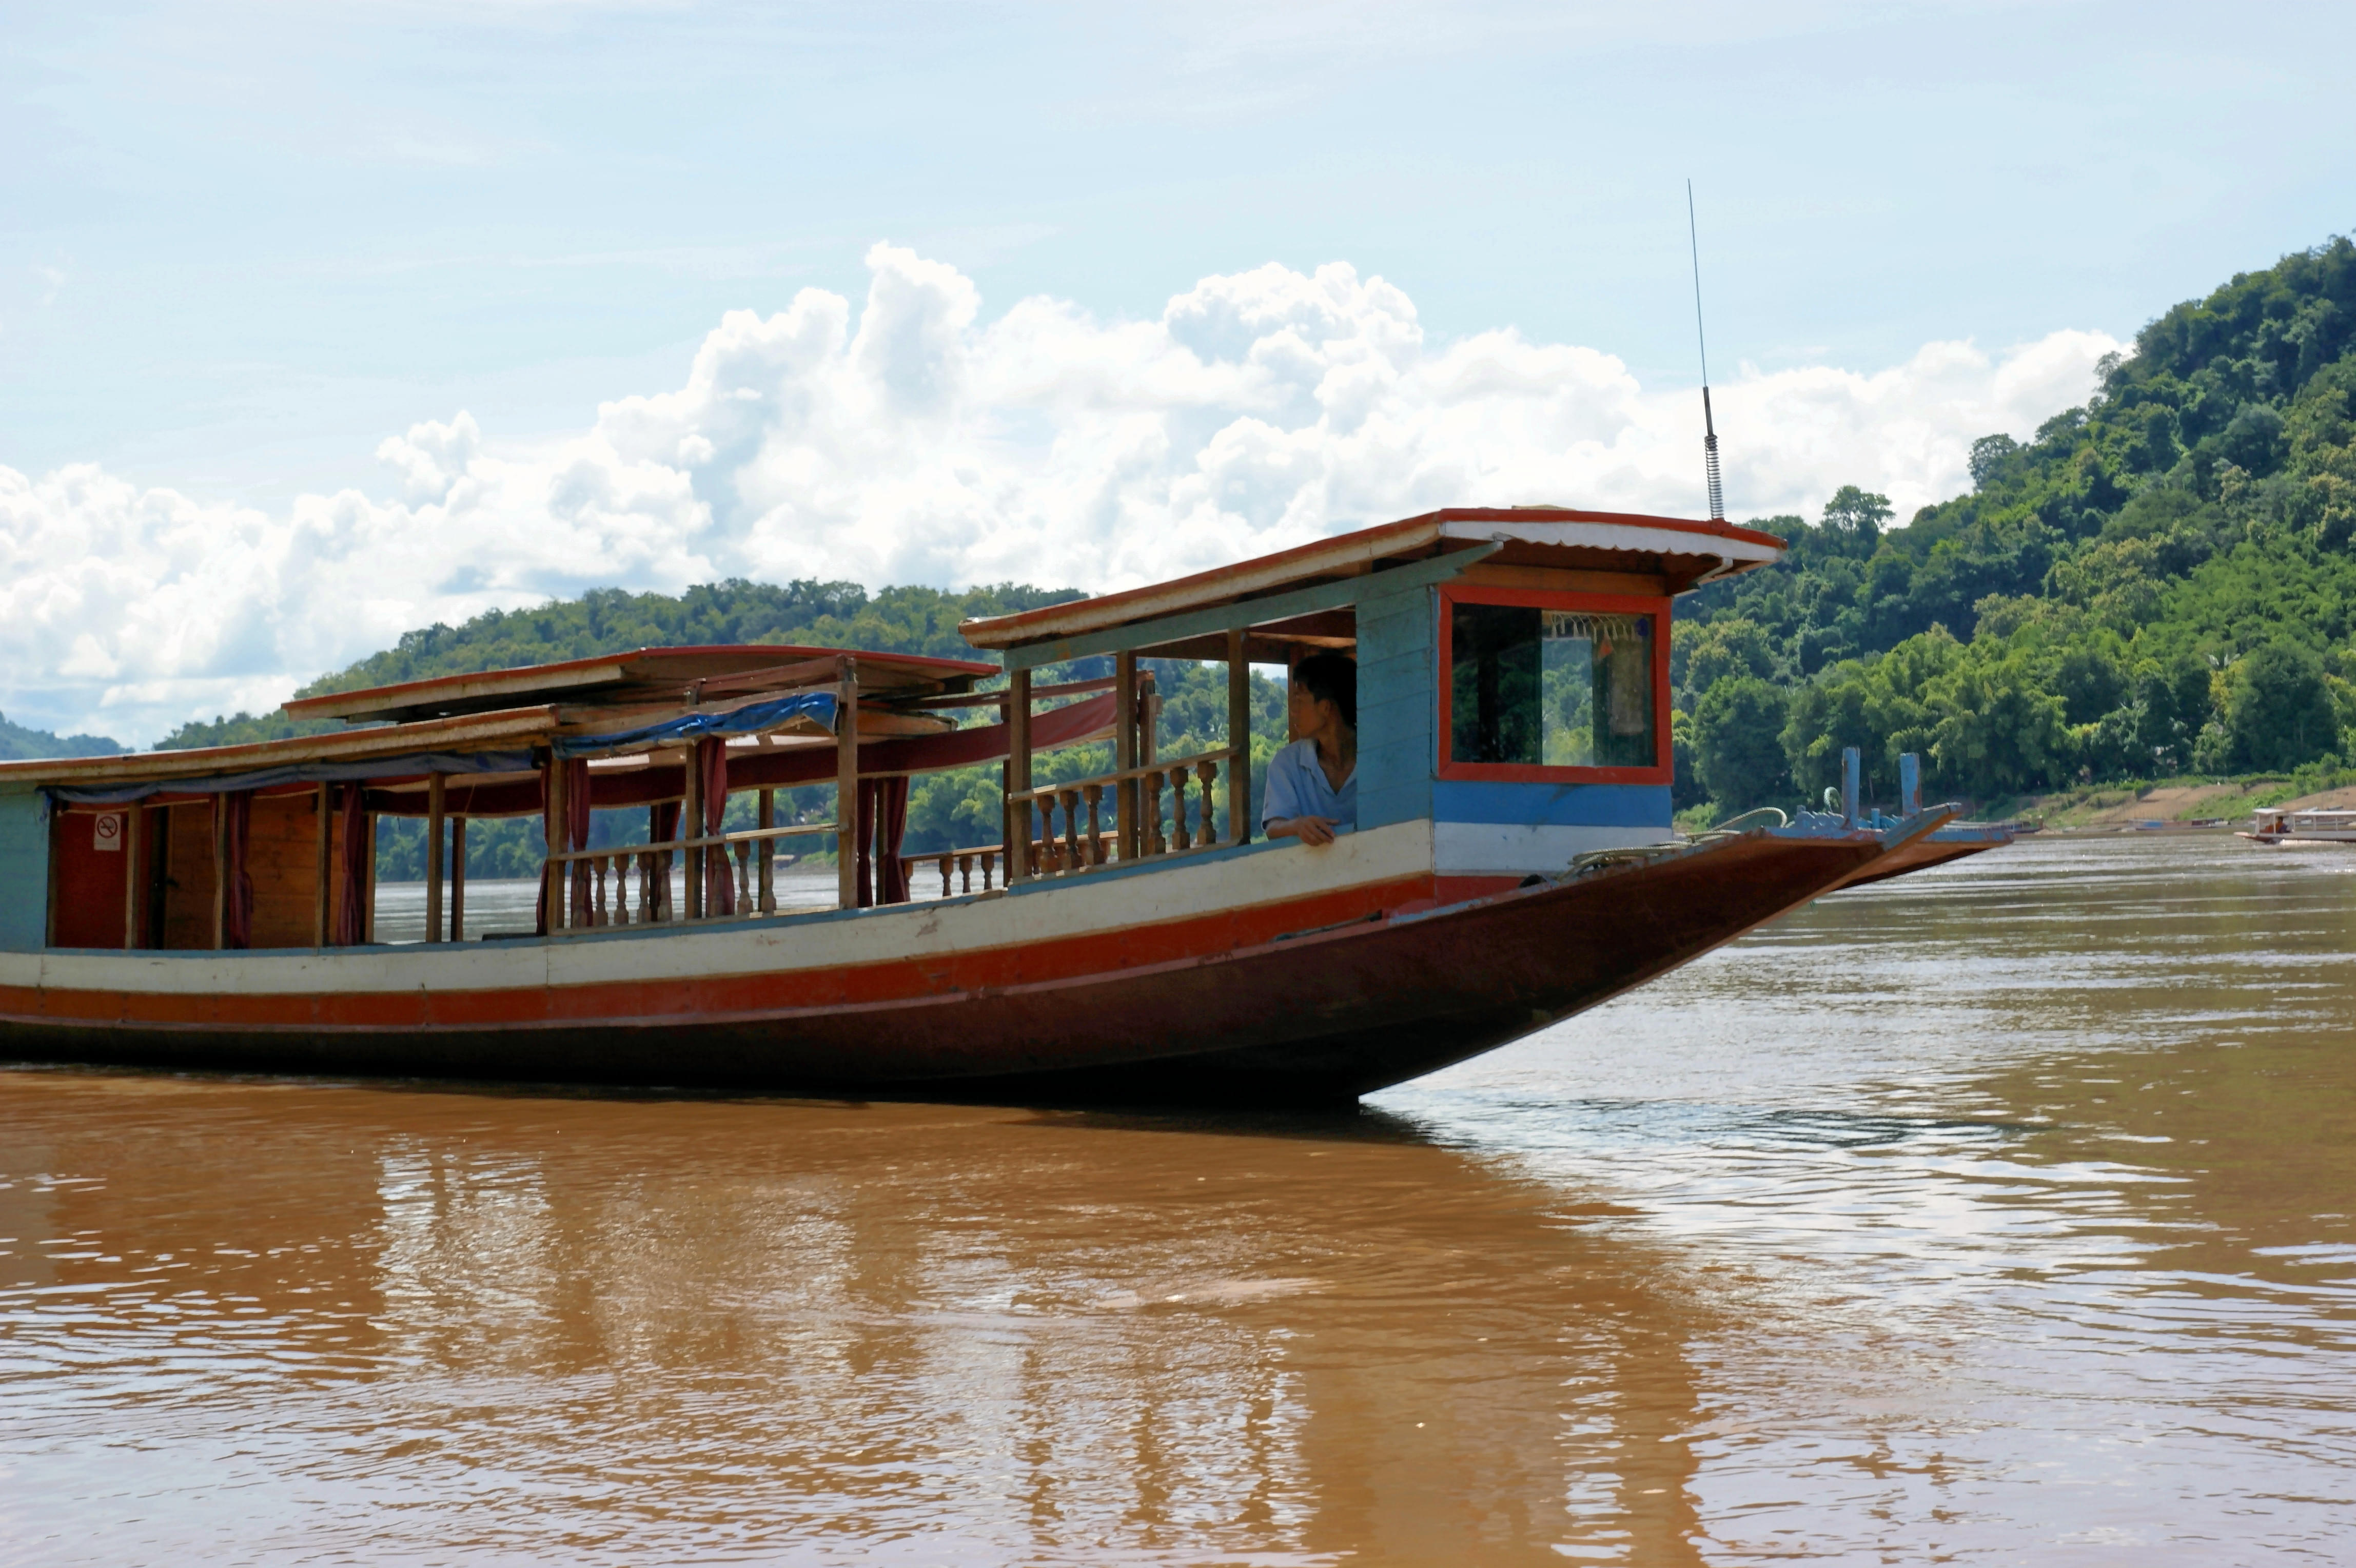 Mekong River Boat Trip